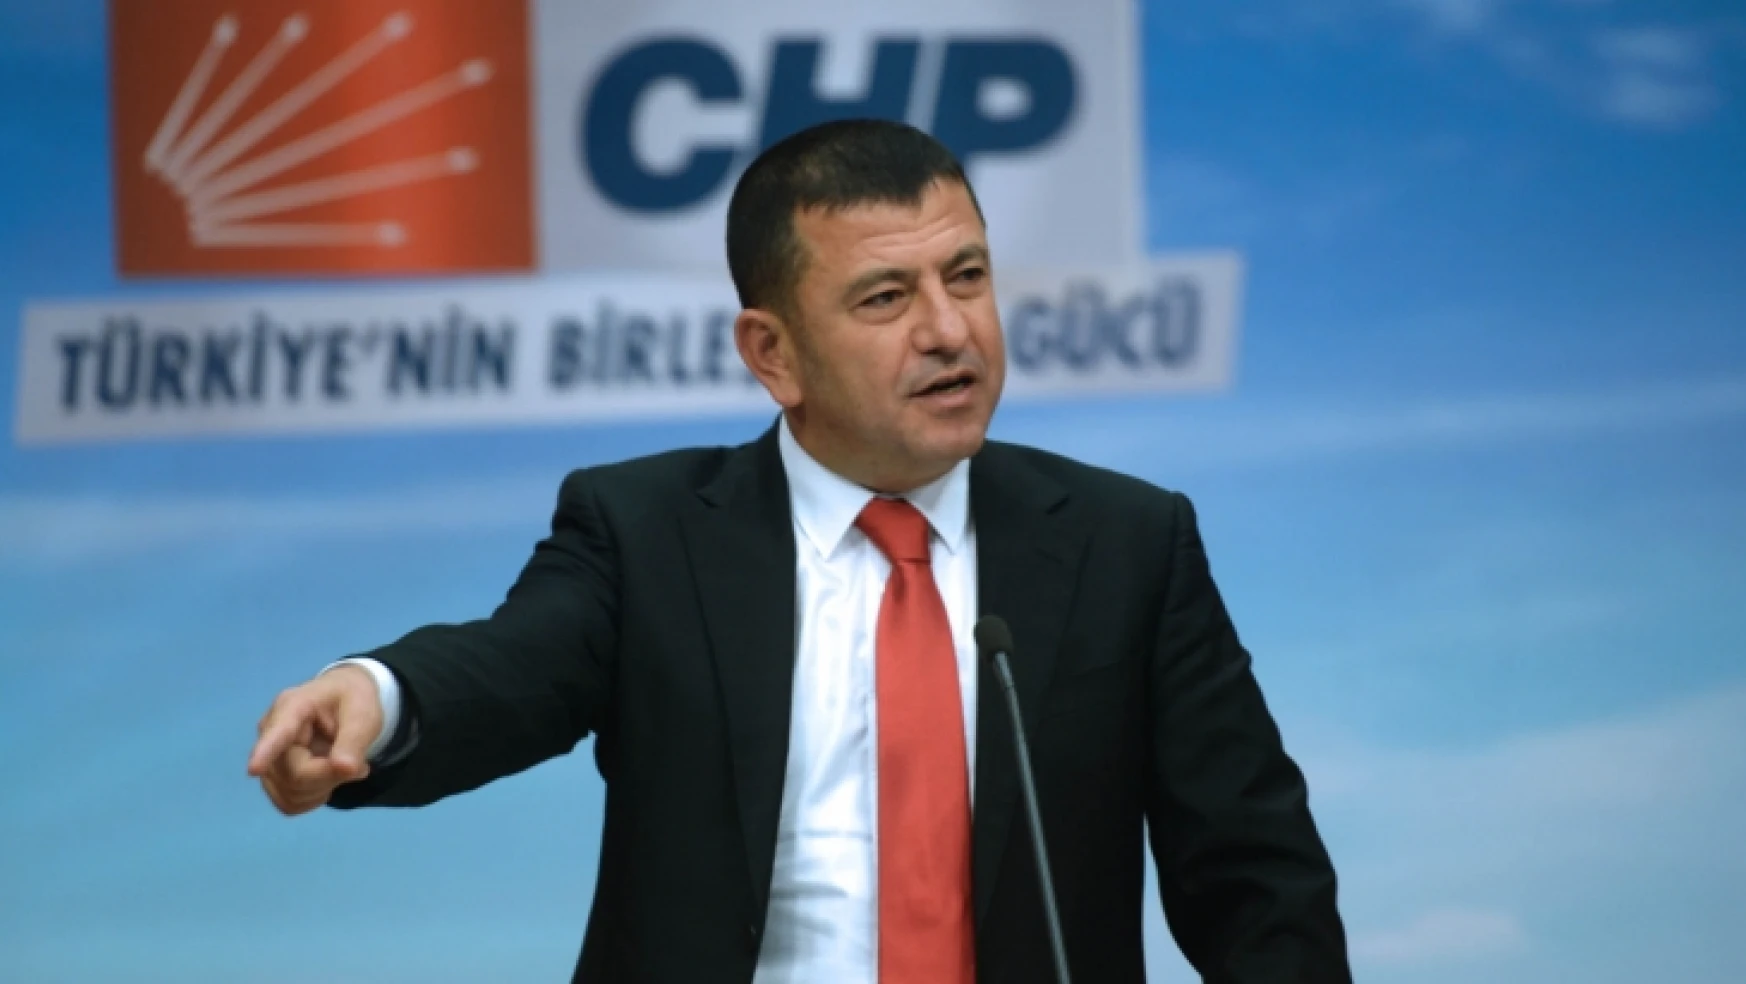 Ağbaba, AK Parti Taşerona Kadro Vermemek İçin Çalışıyor